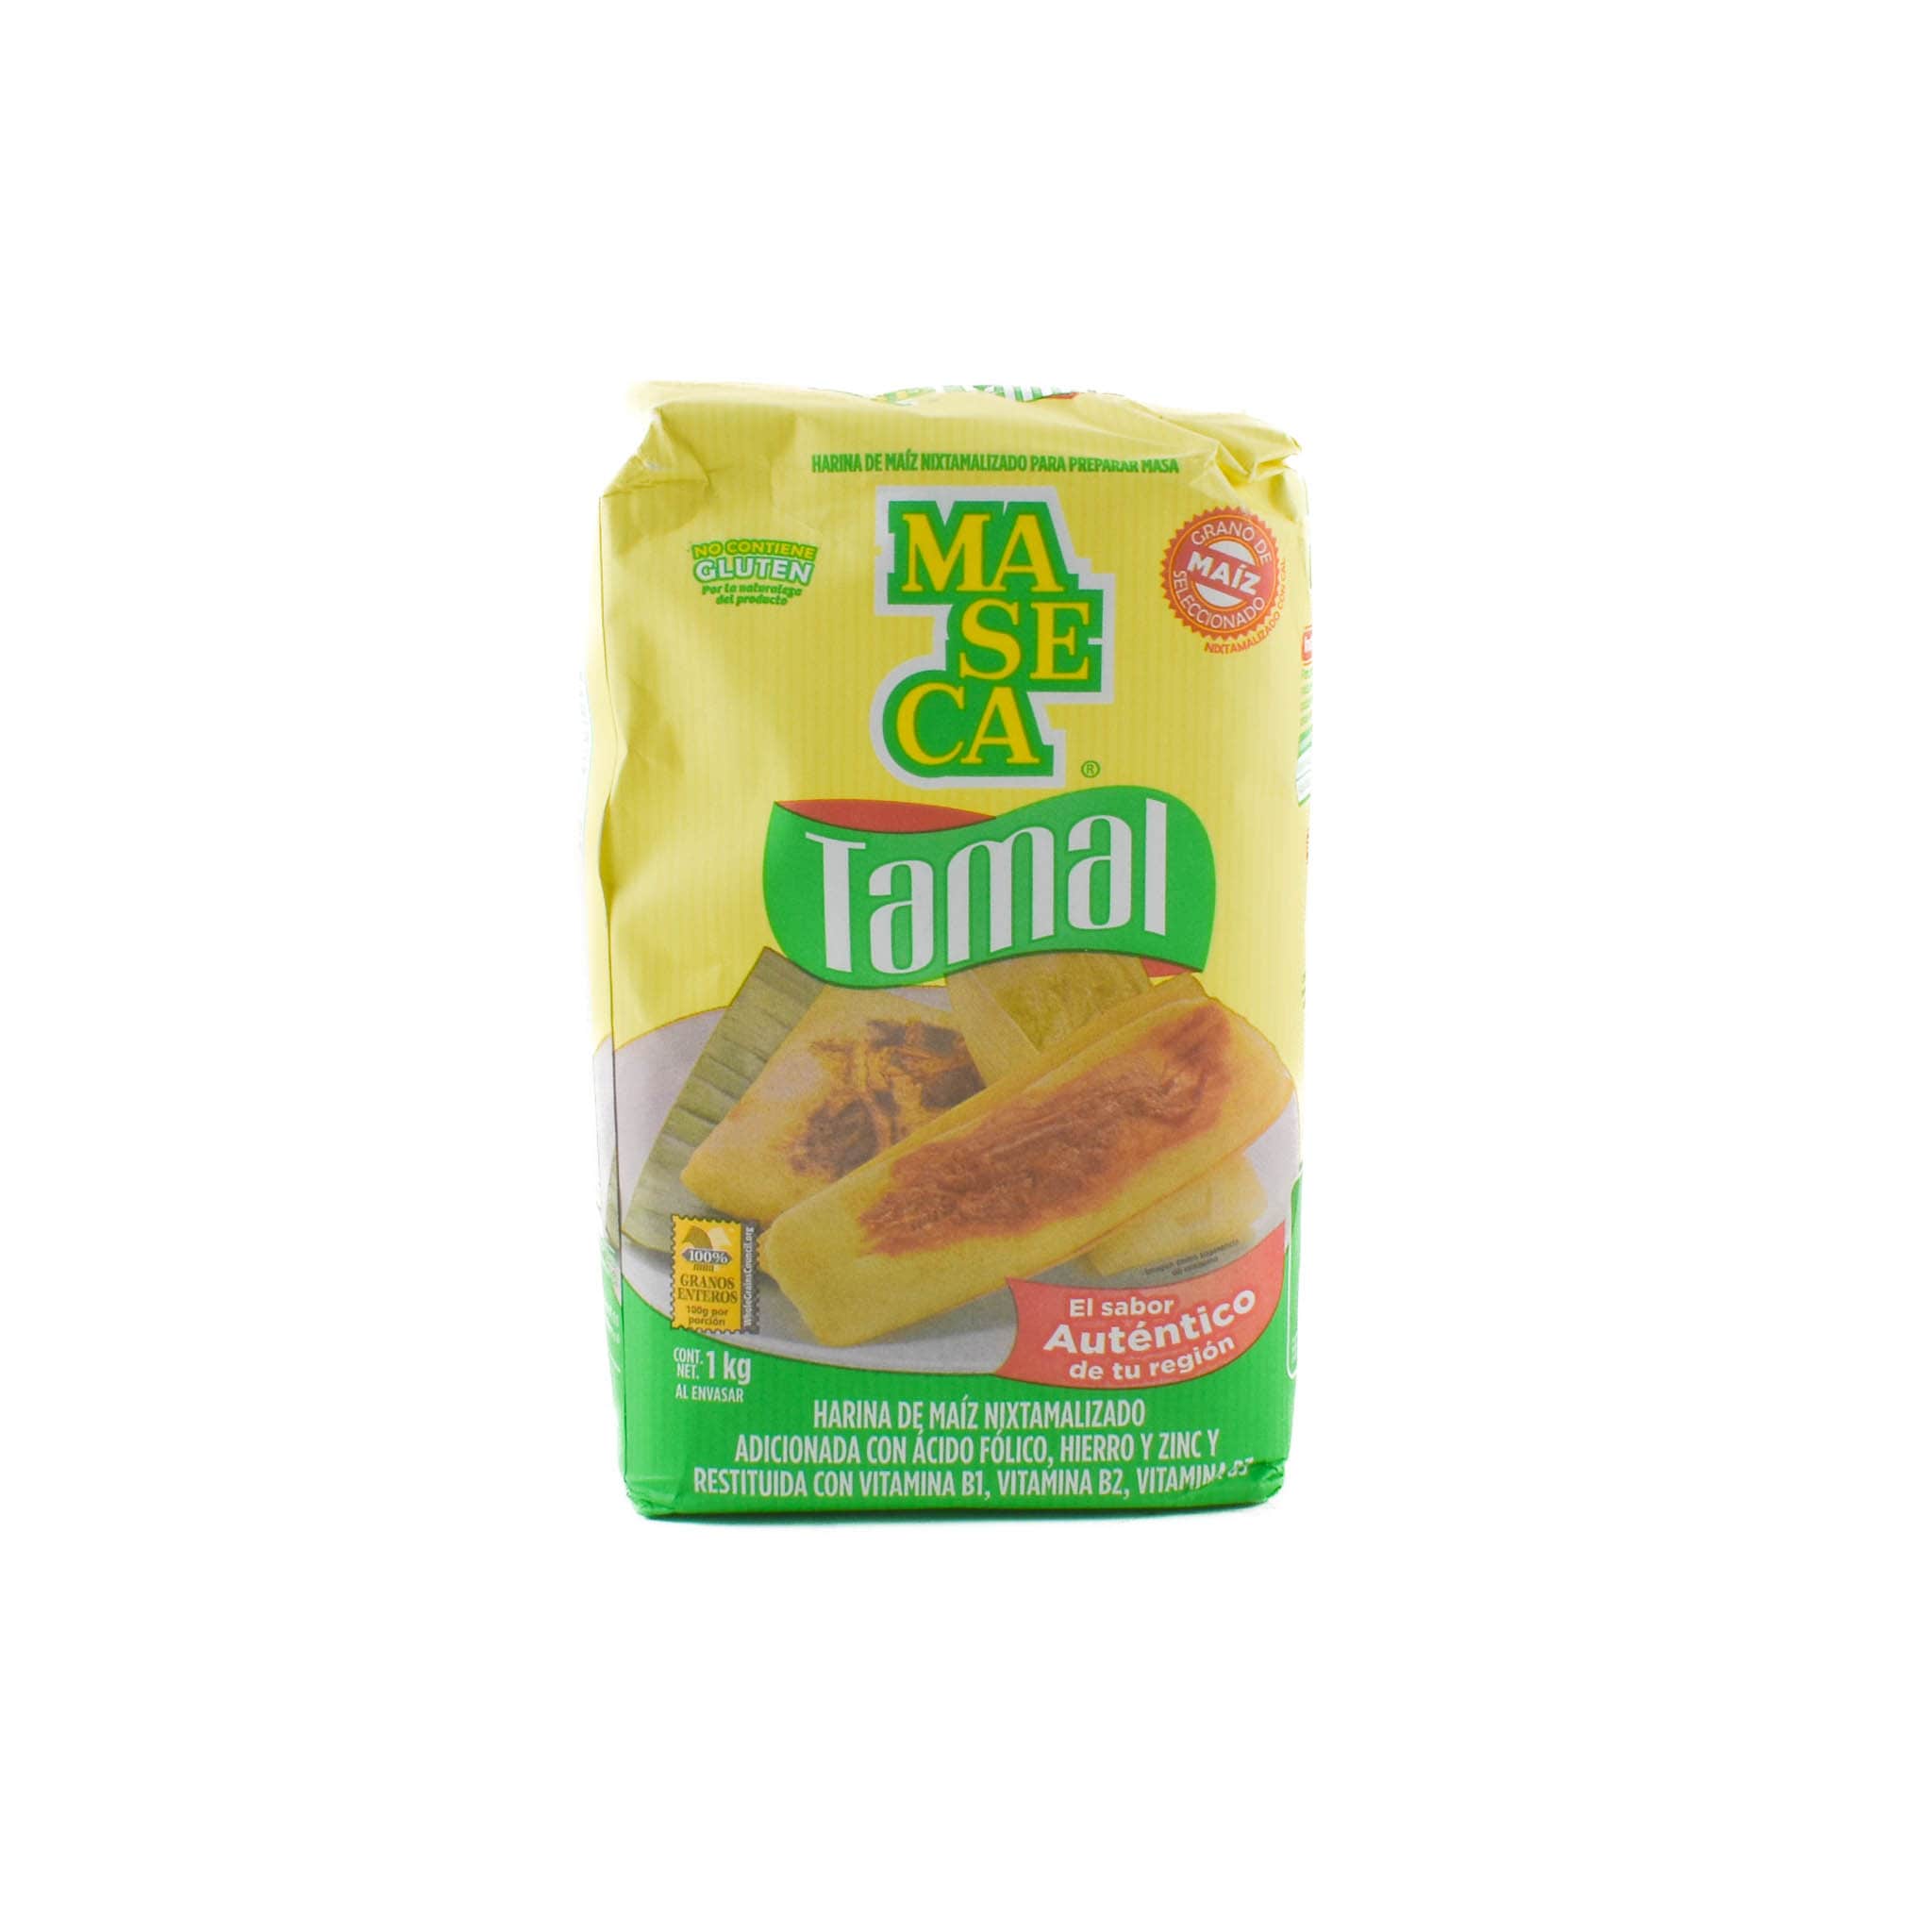 Maseca for Tamales 1kg